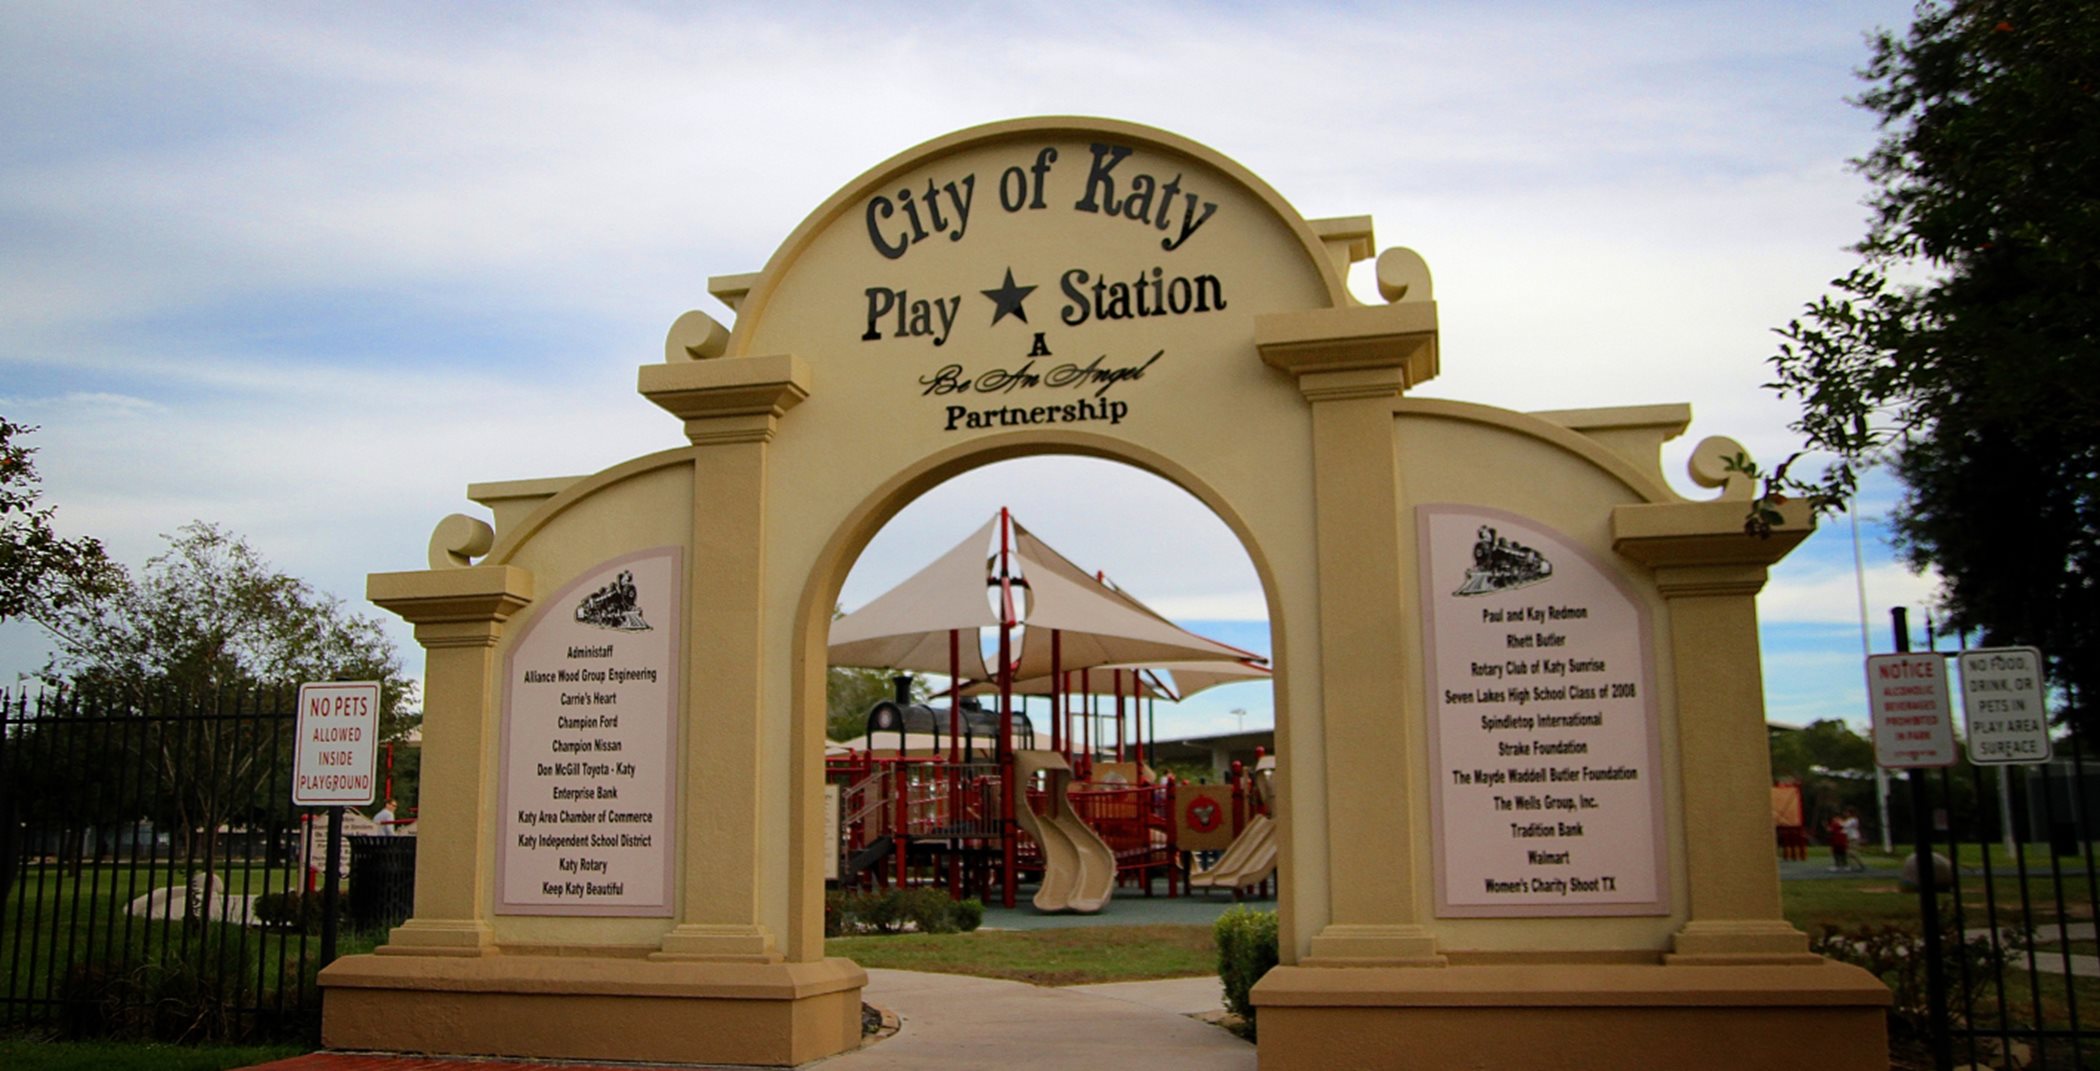 The City of Katy Park